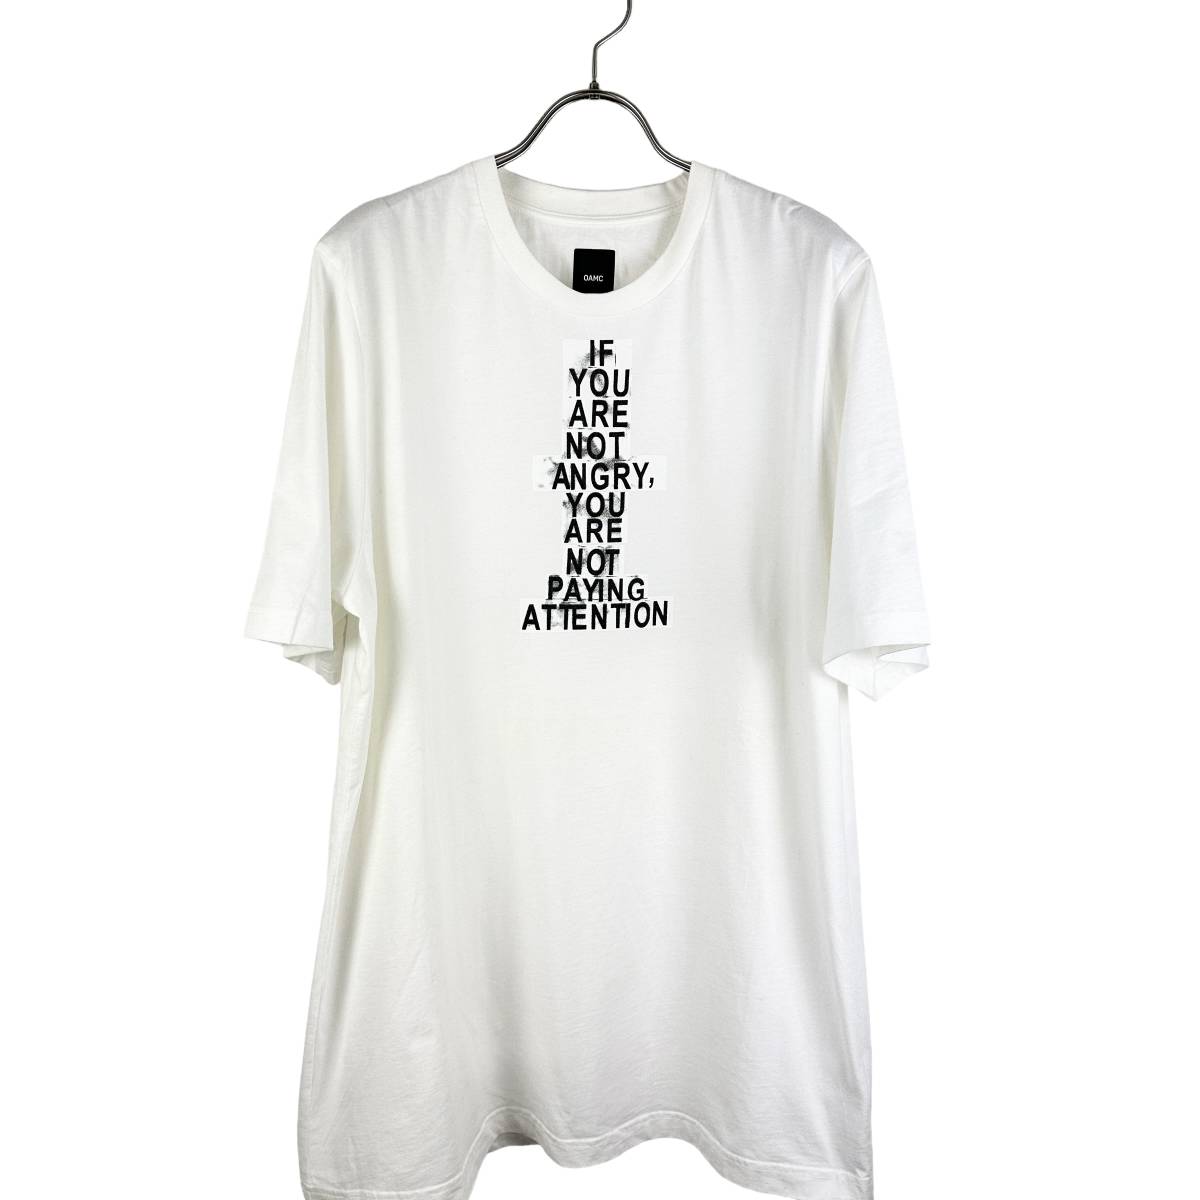 【おトク】 PAYING ANGRY 【20%OFF】OAMC(オーエーエムシー) ATTENTION (white) Shirt T その他